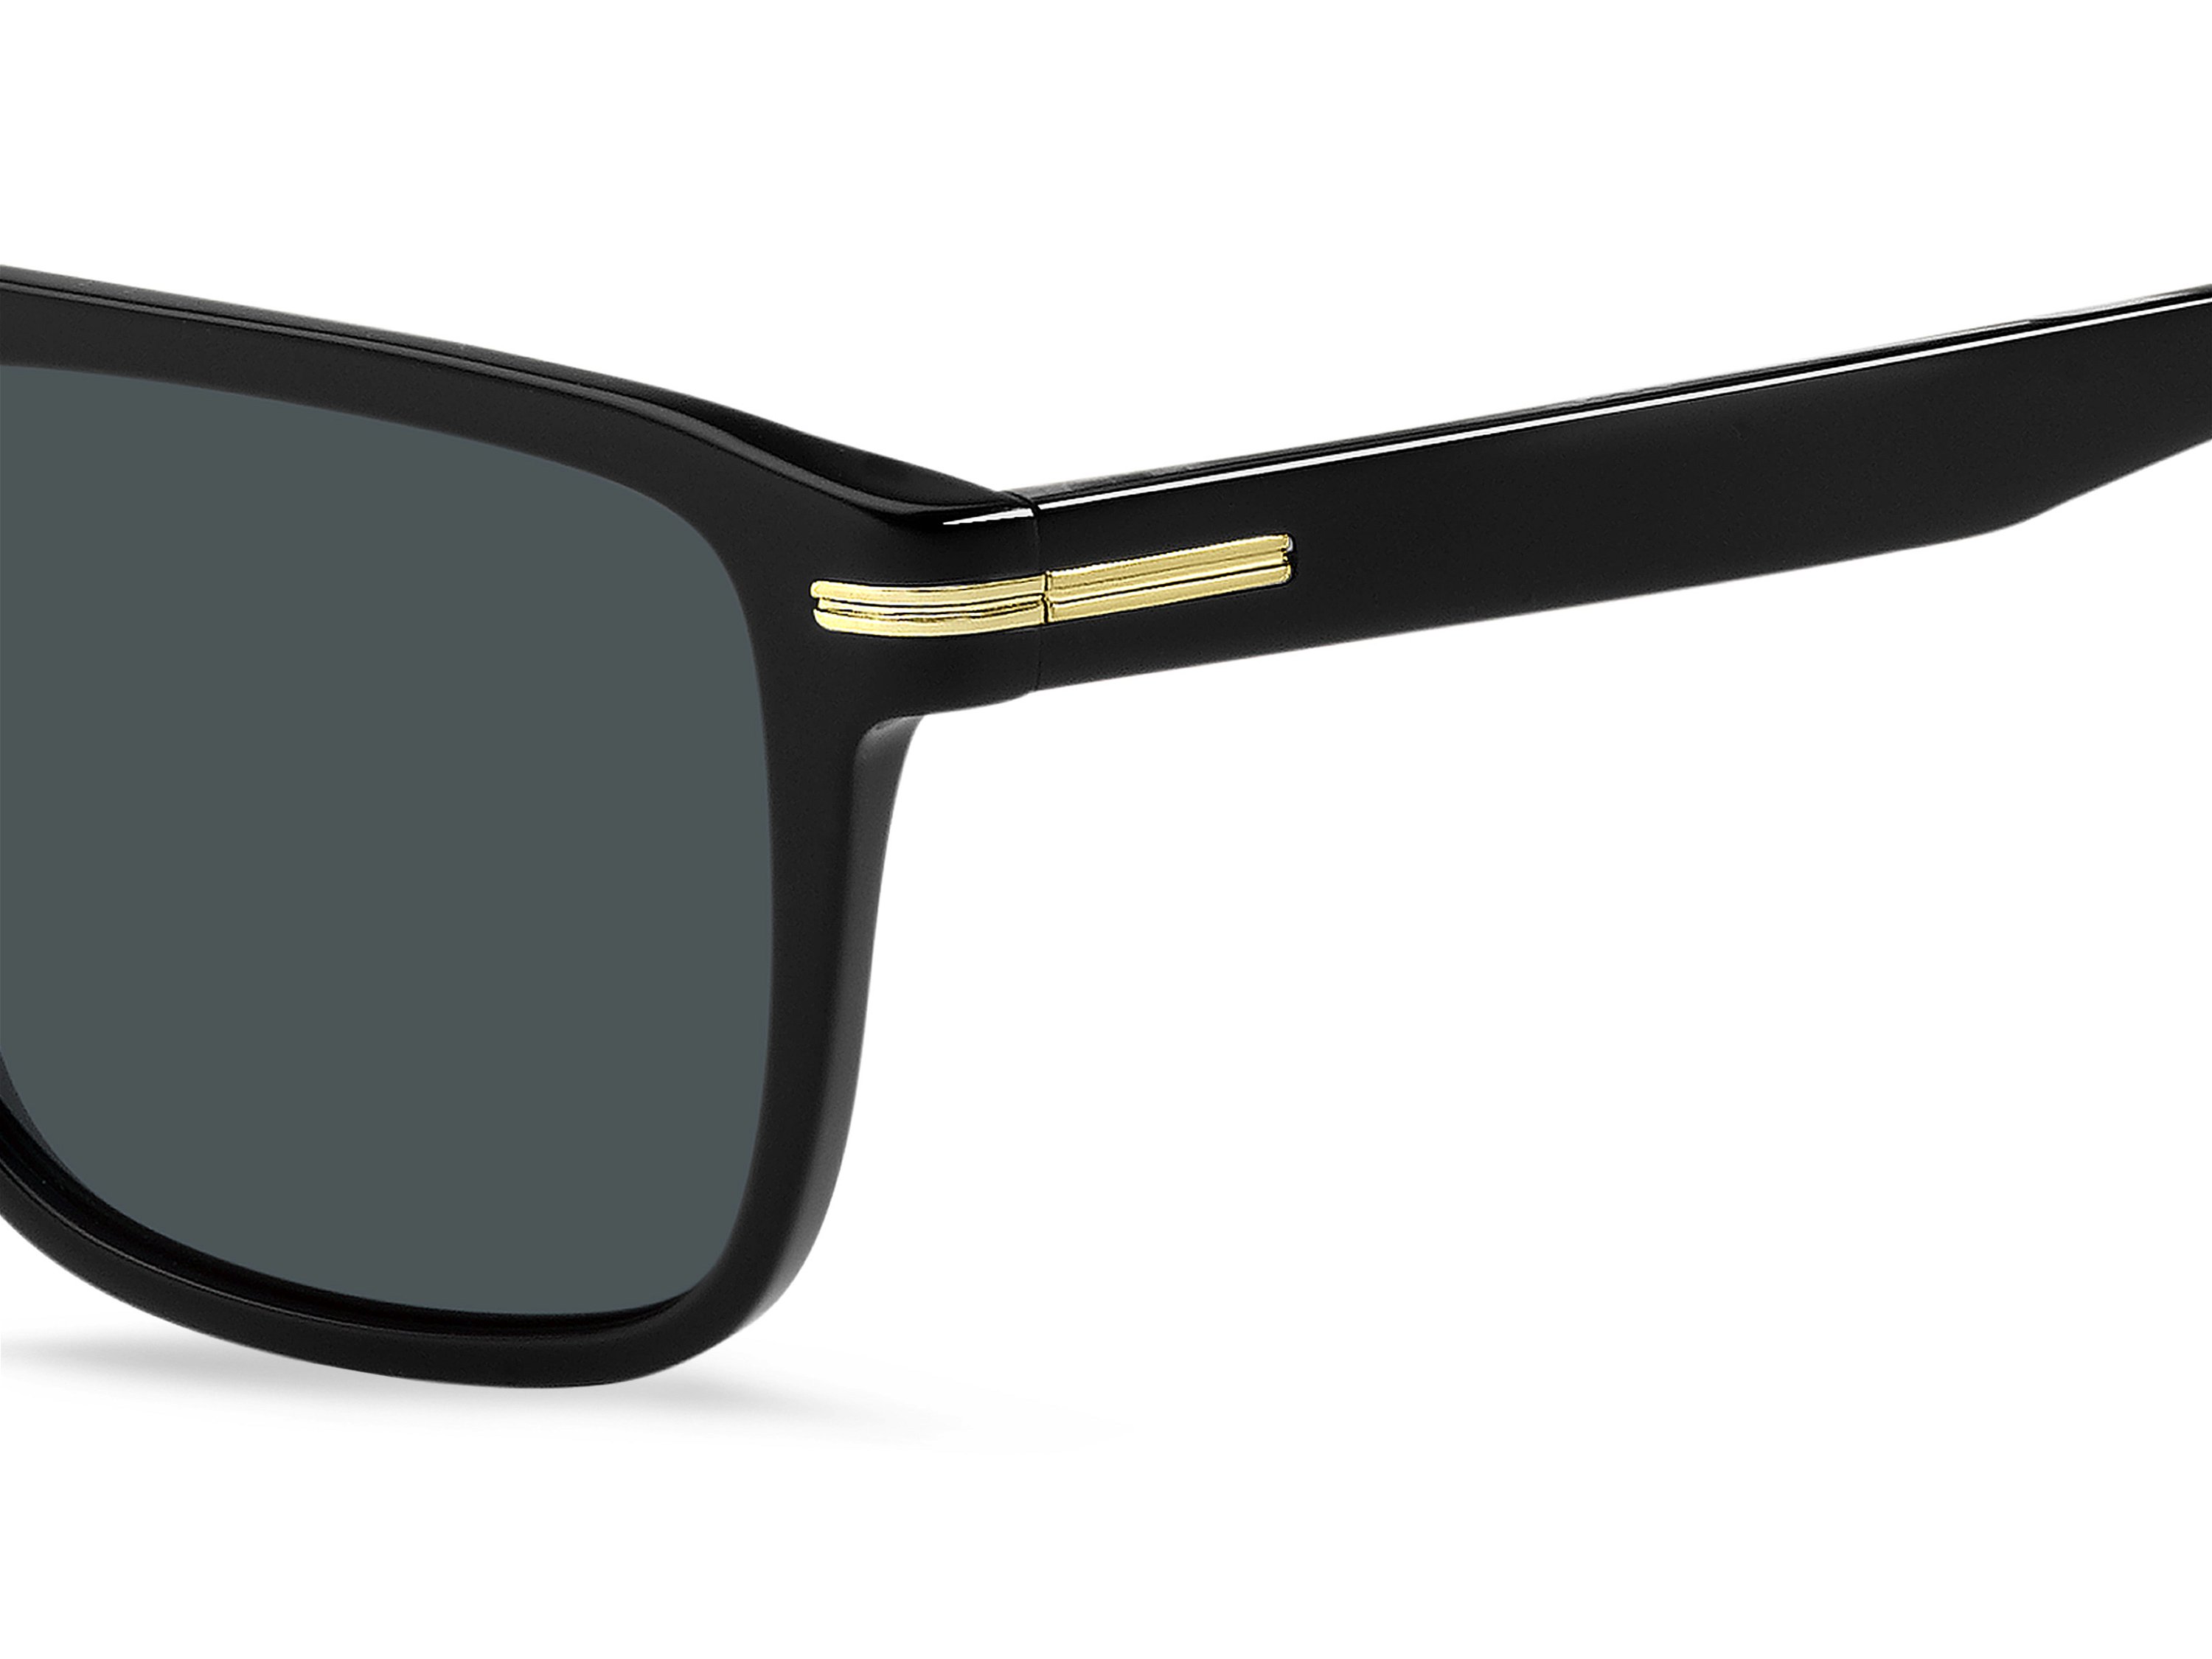 Das Bild zeigt die Sonnenbrille BOSS1599S 807 von der Marke BOSS in Schwarz.